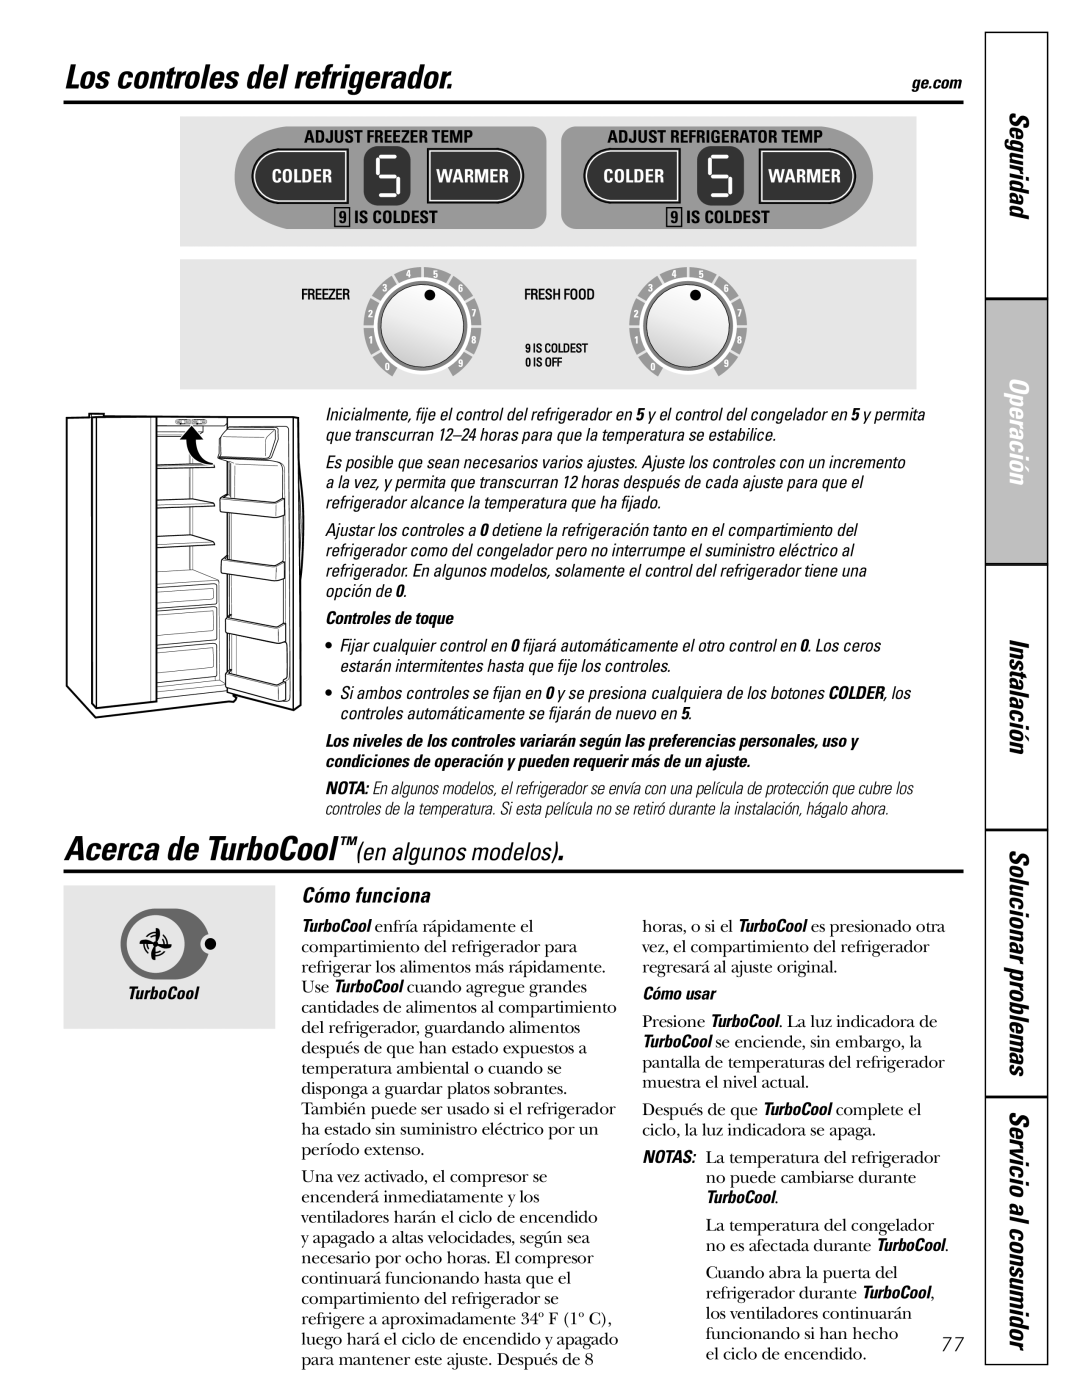 GE 25 and 27 Los controles del refrigerador, Acerca de TurboCoolen algunos modelos, Seguridad, Operación, Instalación 